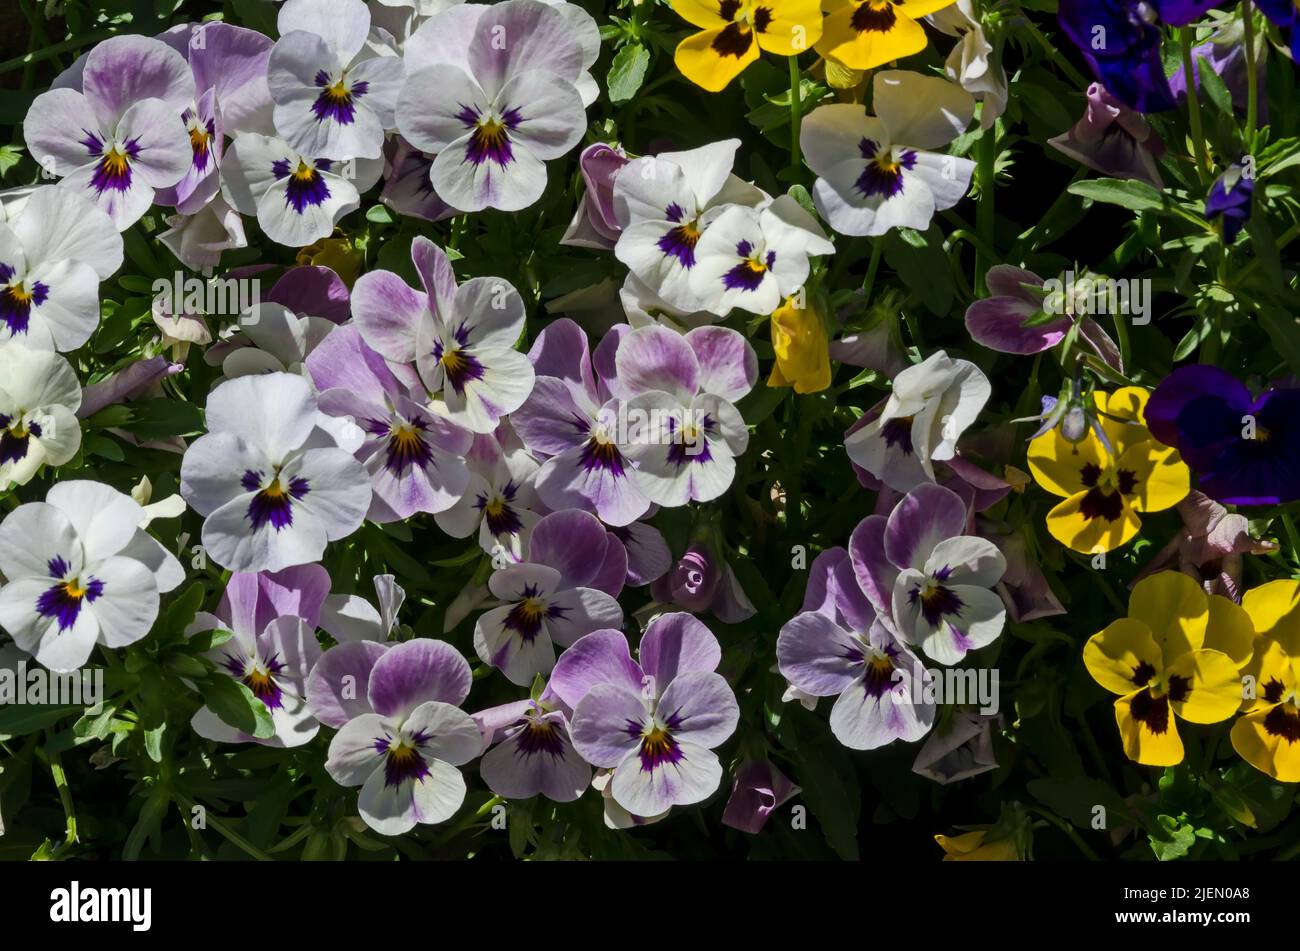 Mischung aus violetten, gelben, rosa und weißen Veilchen, Altai violett oder lila Blume, Sofia, Bulgarien Stockfoto